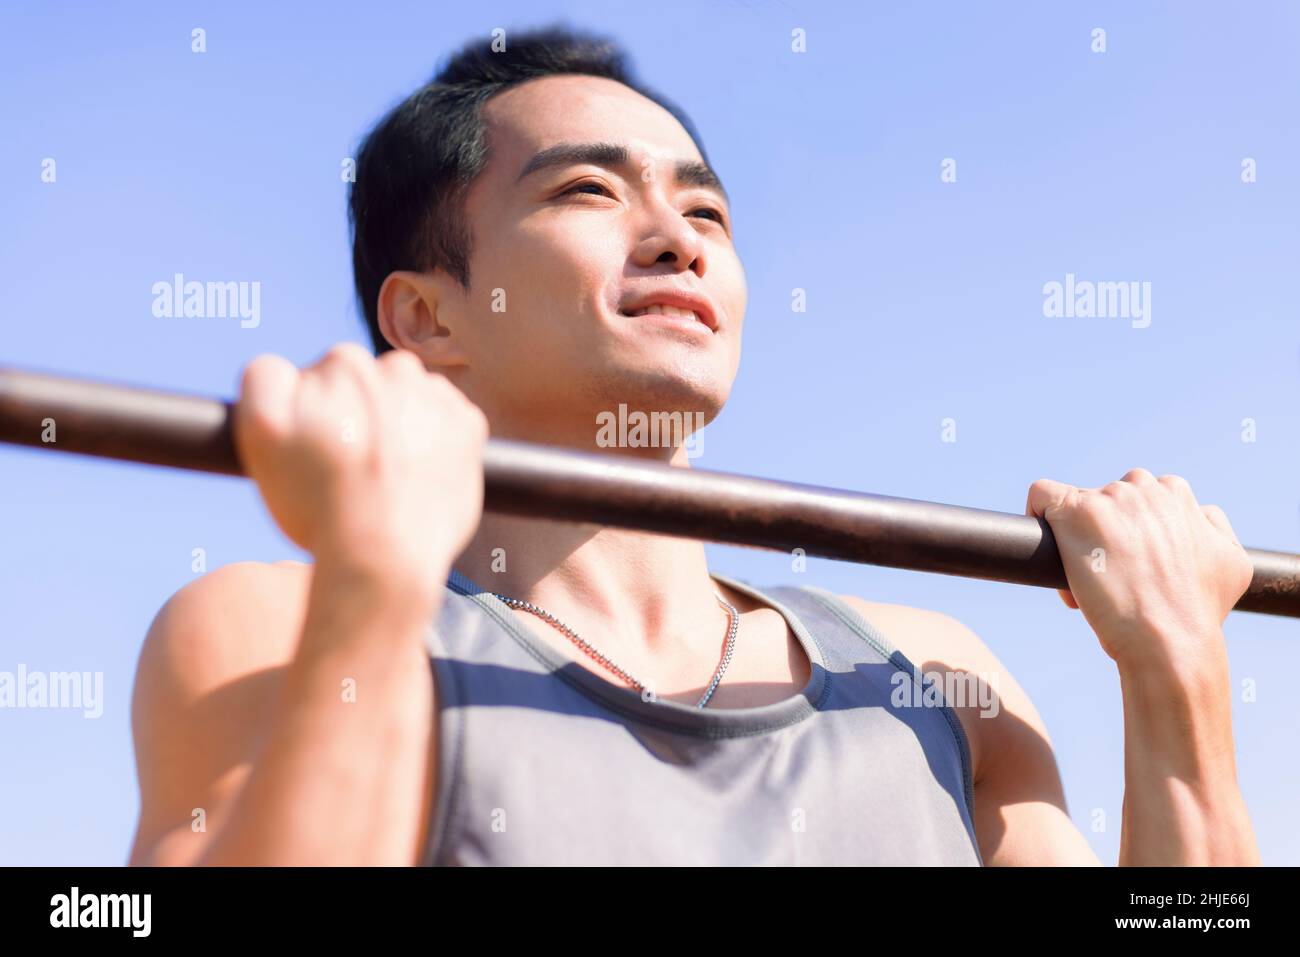 Junger Mann, der draußen trainiert und seinen Oberkörper über den horizontalen Balken hält Stockfoto